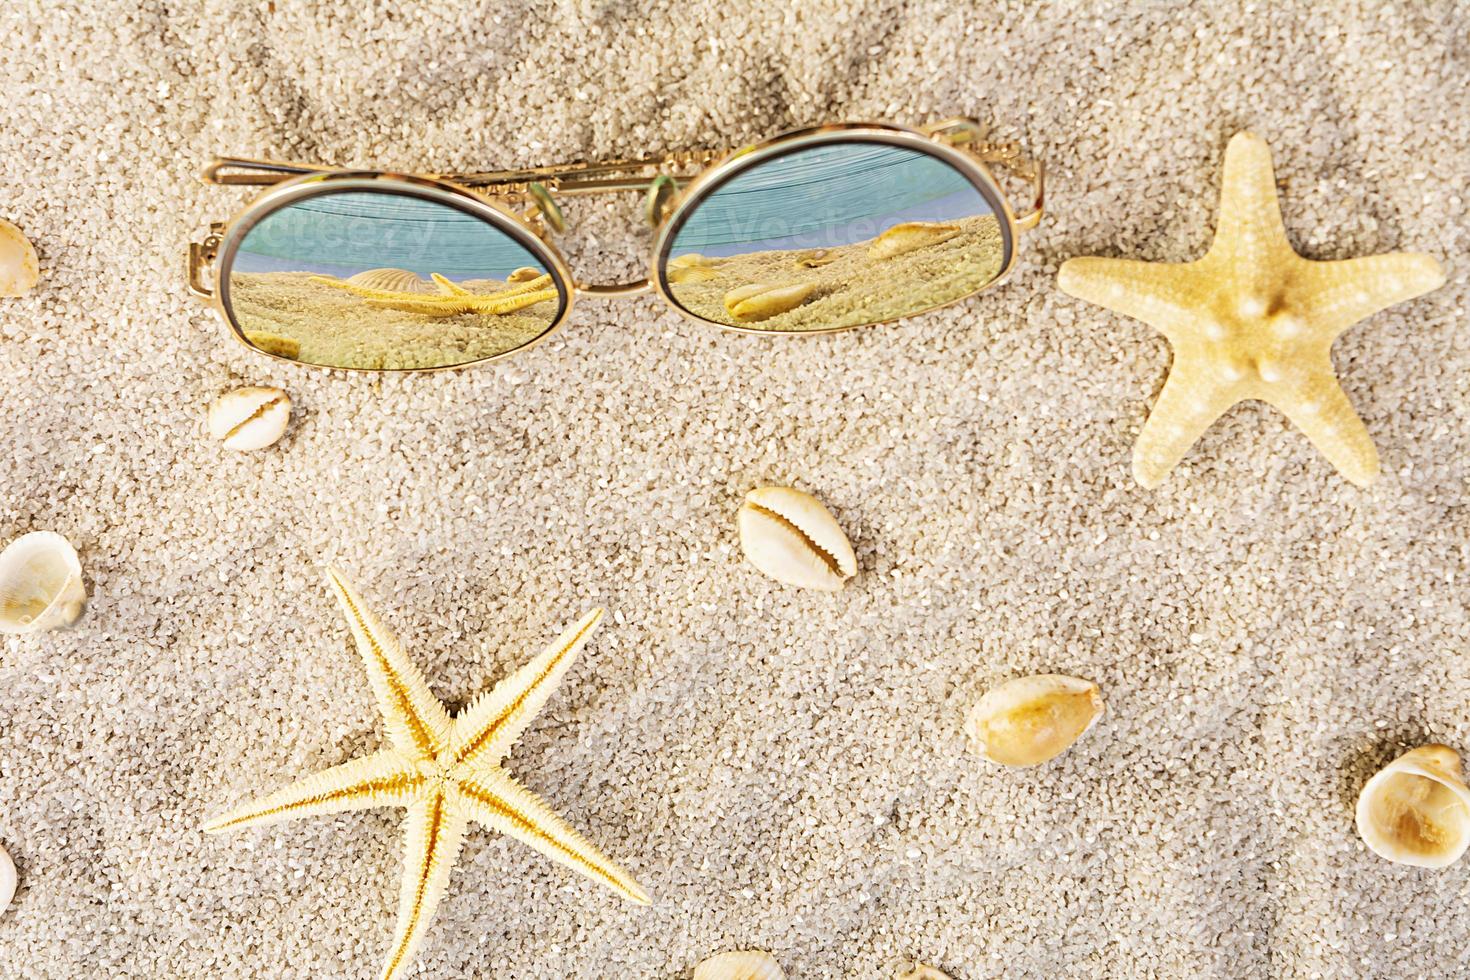 fond d'été. sable de mer avec coquillages, étoiles de mer et lunettes de soleil. notion de vacances d'été photo